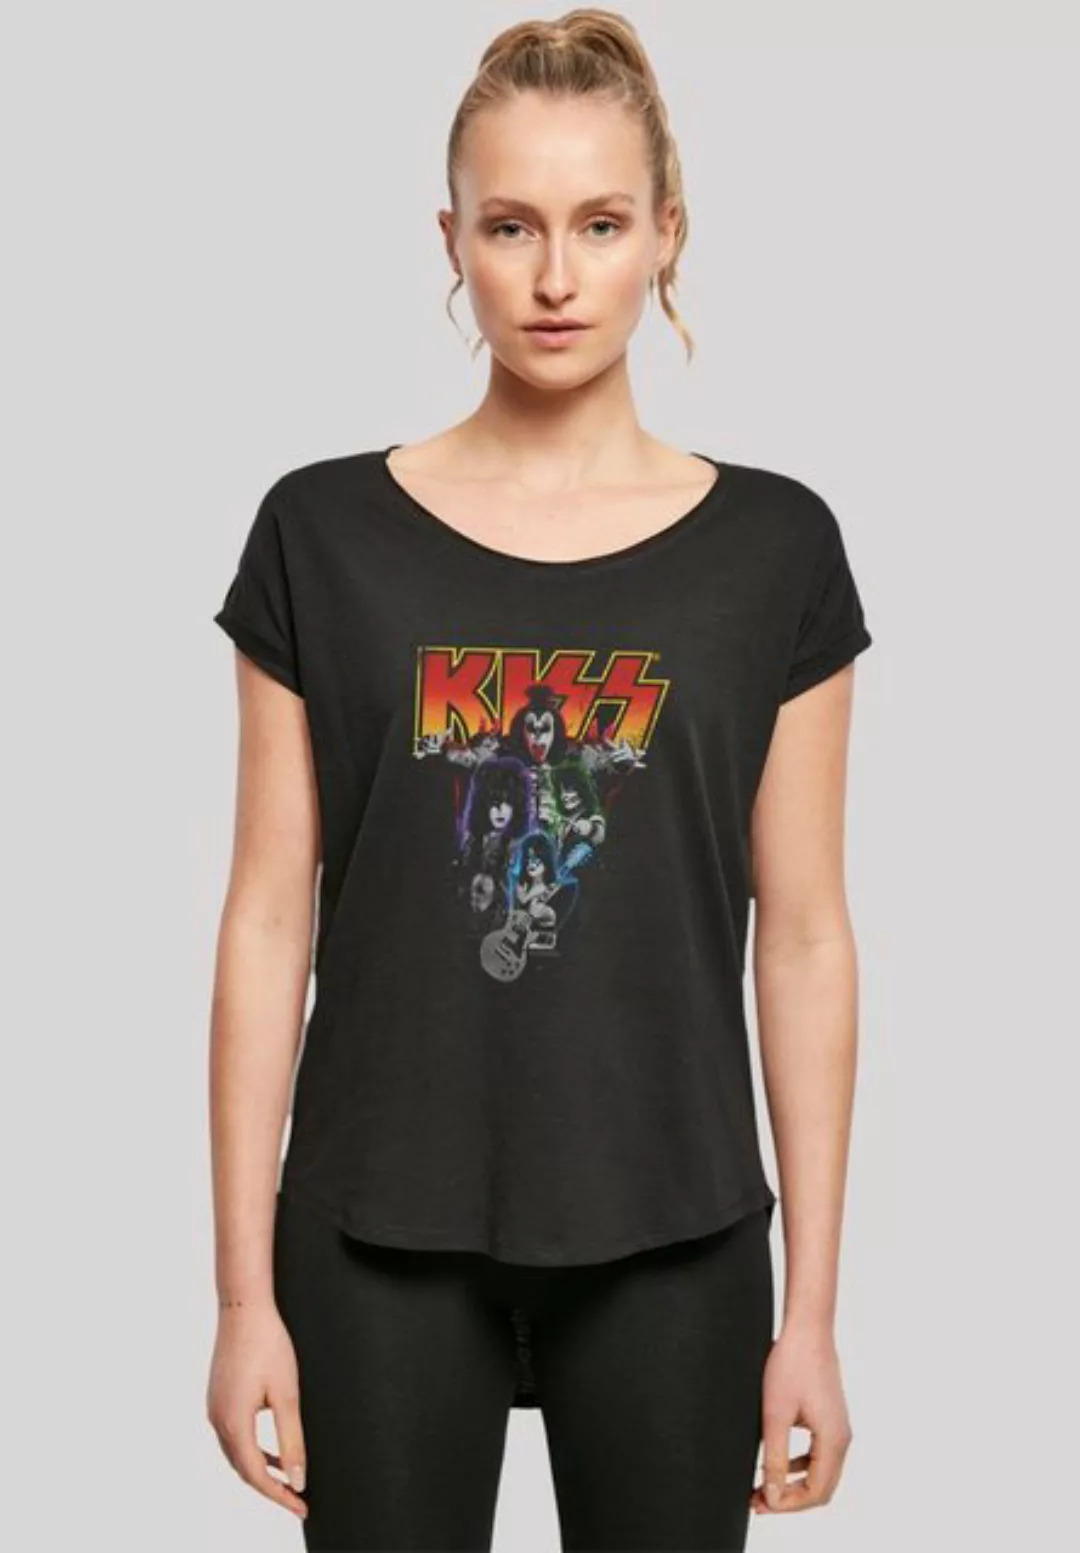 F4NT4STIC T-Shirt Kiss Rock Band Neon Premium Qualität, Musik, By Rock Off günstig online kaufen